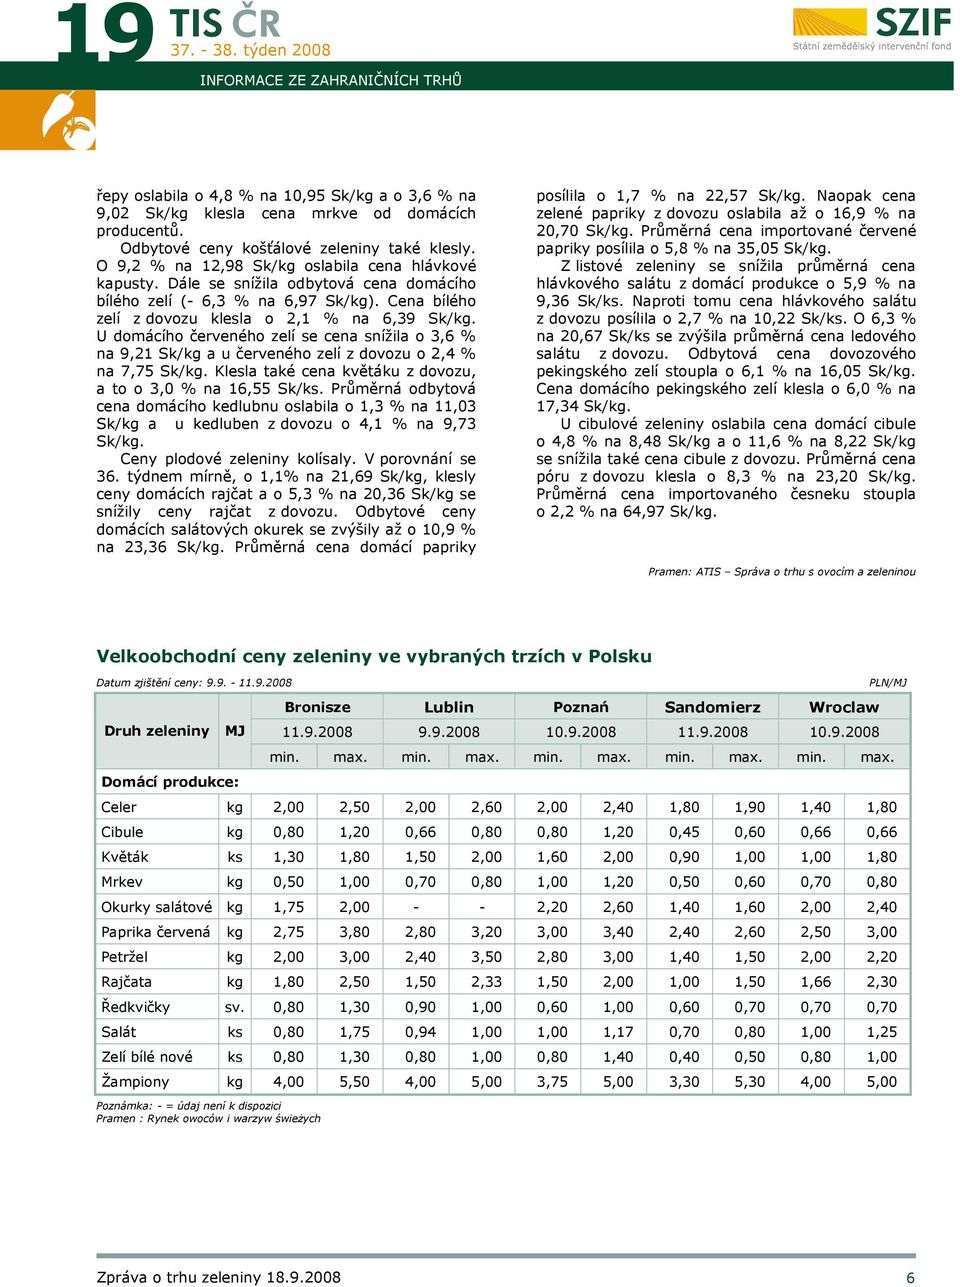 U domácího červeného zelí se cena snížila o 3,6 % na 9,21 Sk/kg a u červeného zelí z dovozu o 2,4 % na 7,75 Sk/kg. Klesla také cena květáku z dovozu, a to o 3,0 % na 16,55 Sk/ks.